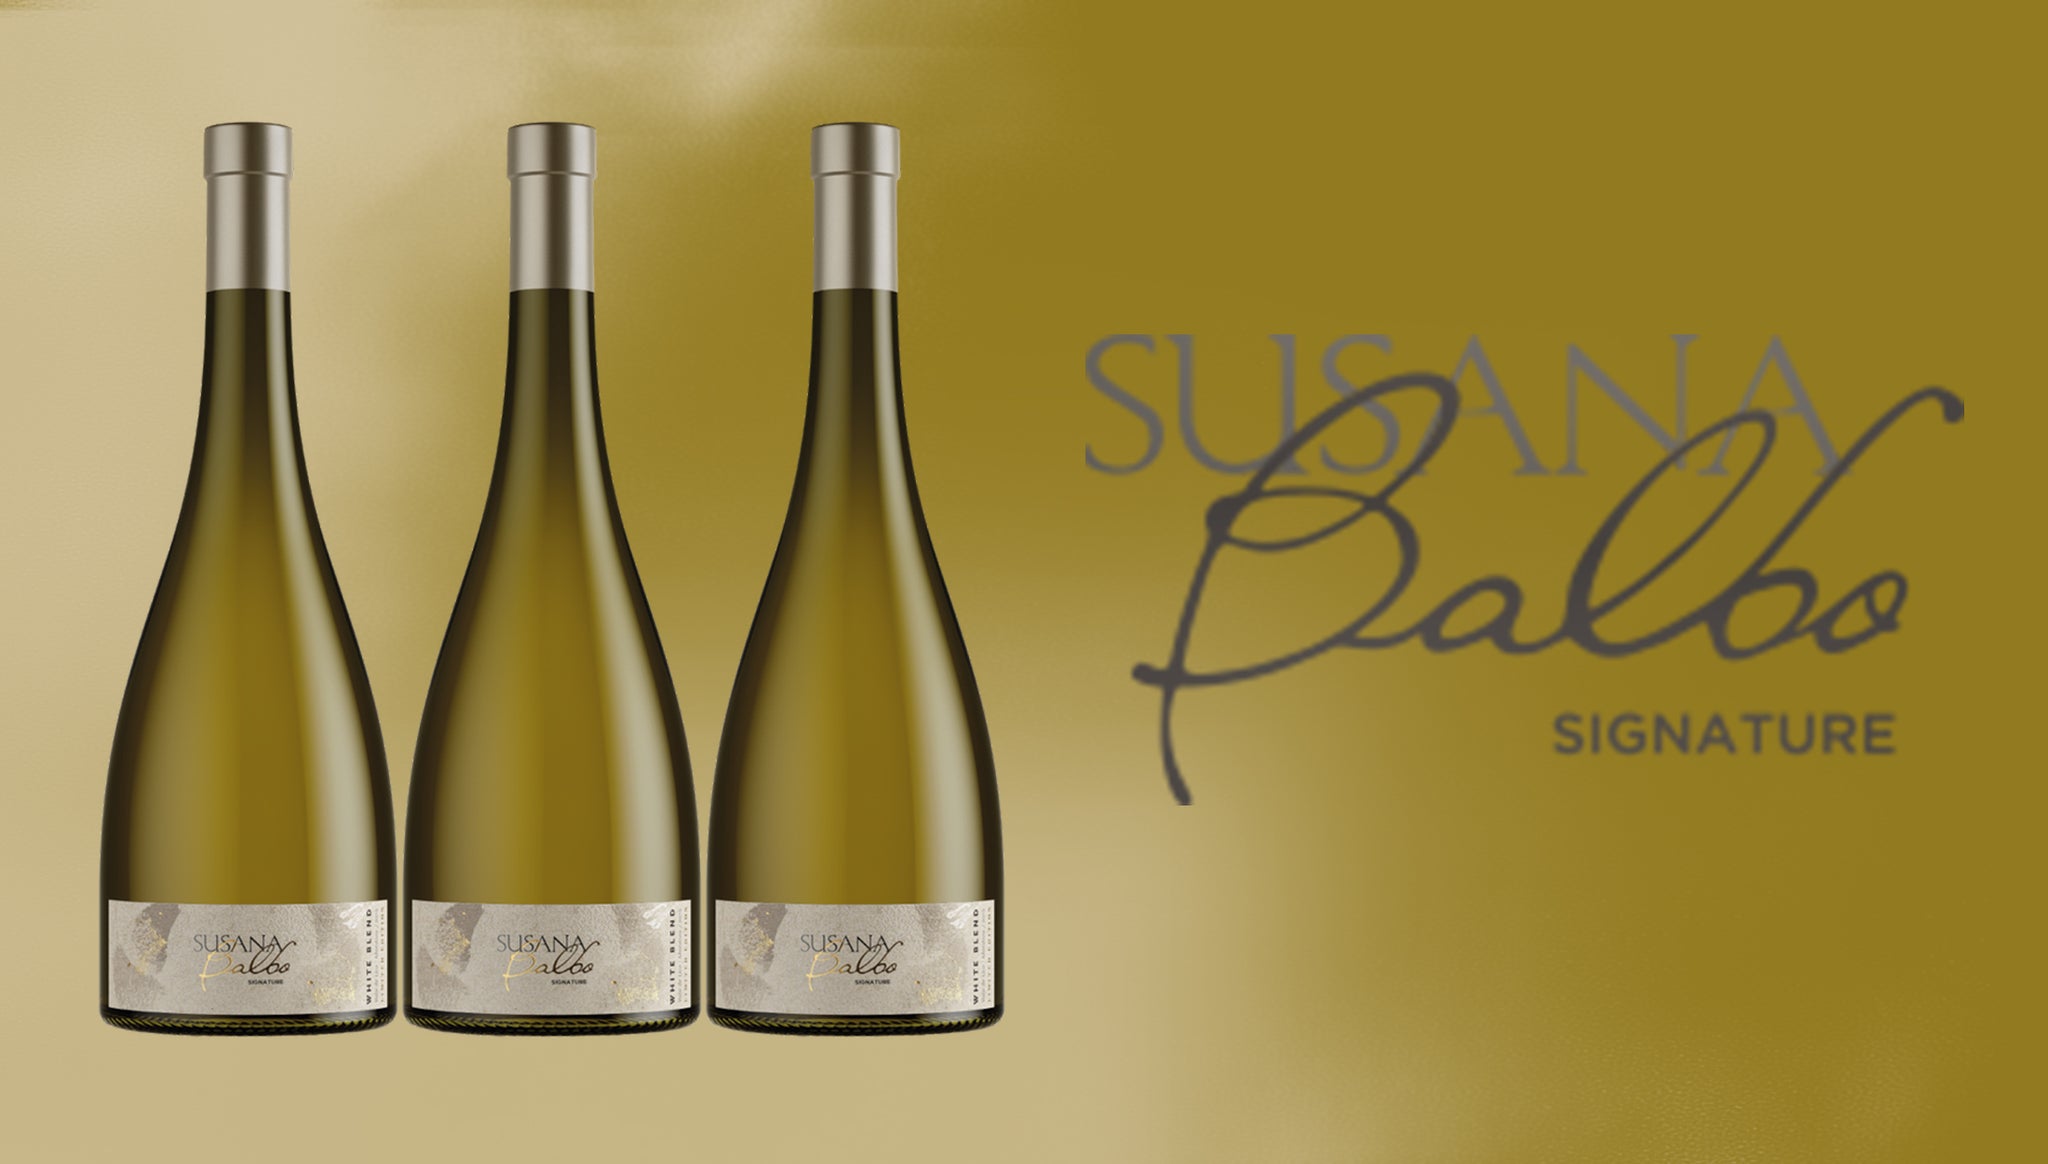 Wine Wednesday - Susana Balbo